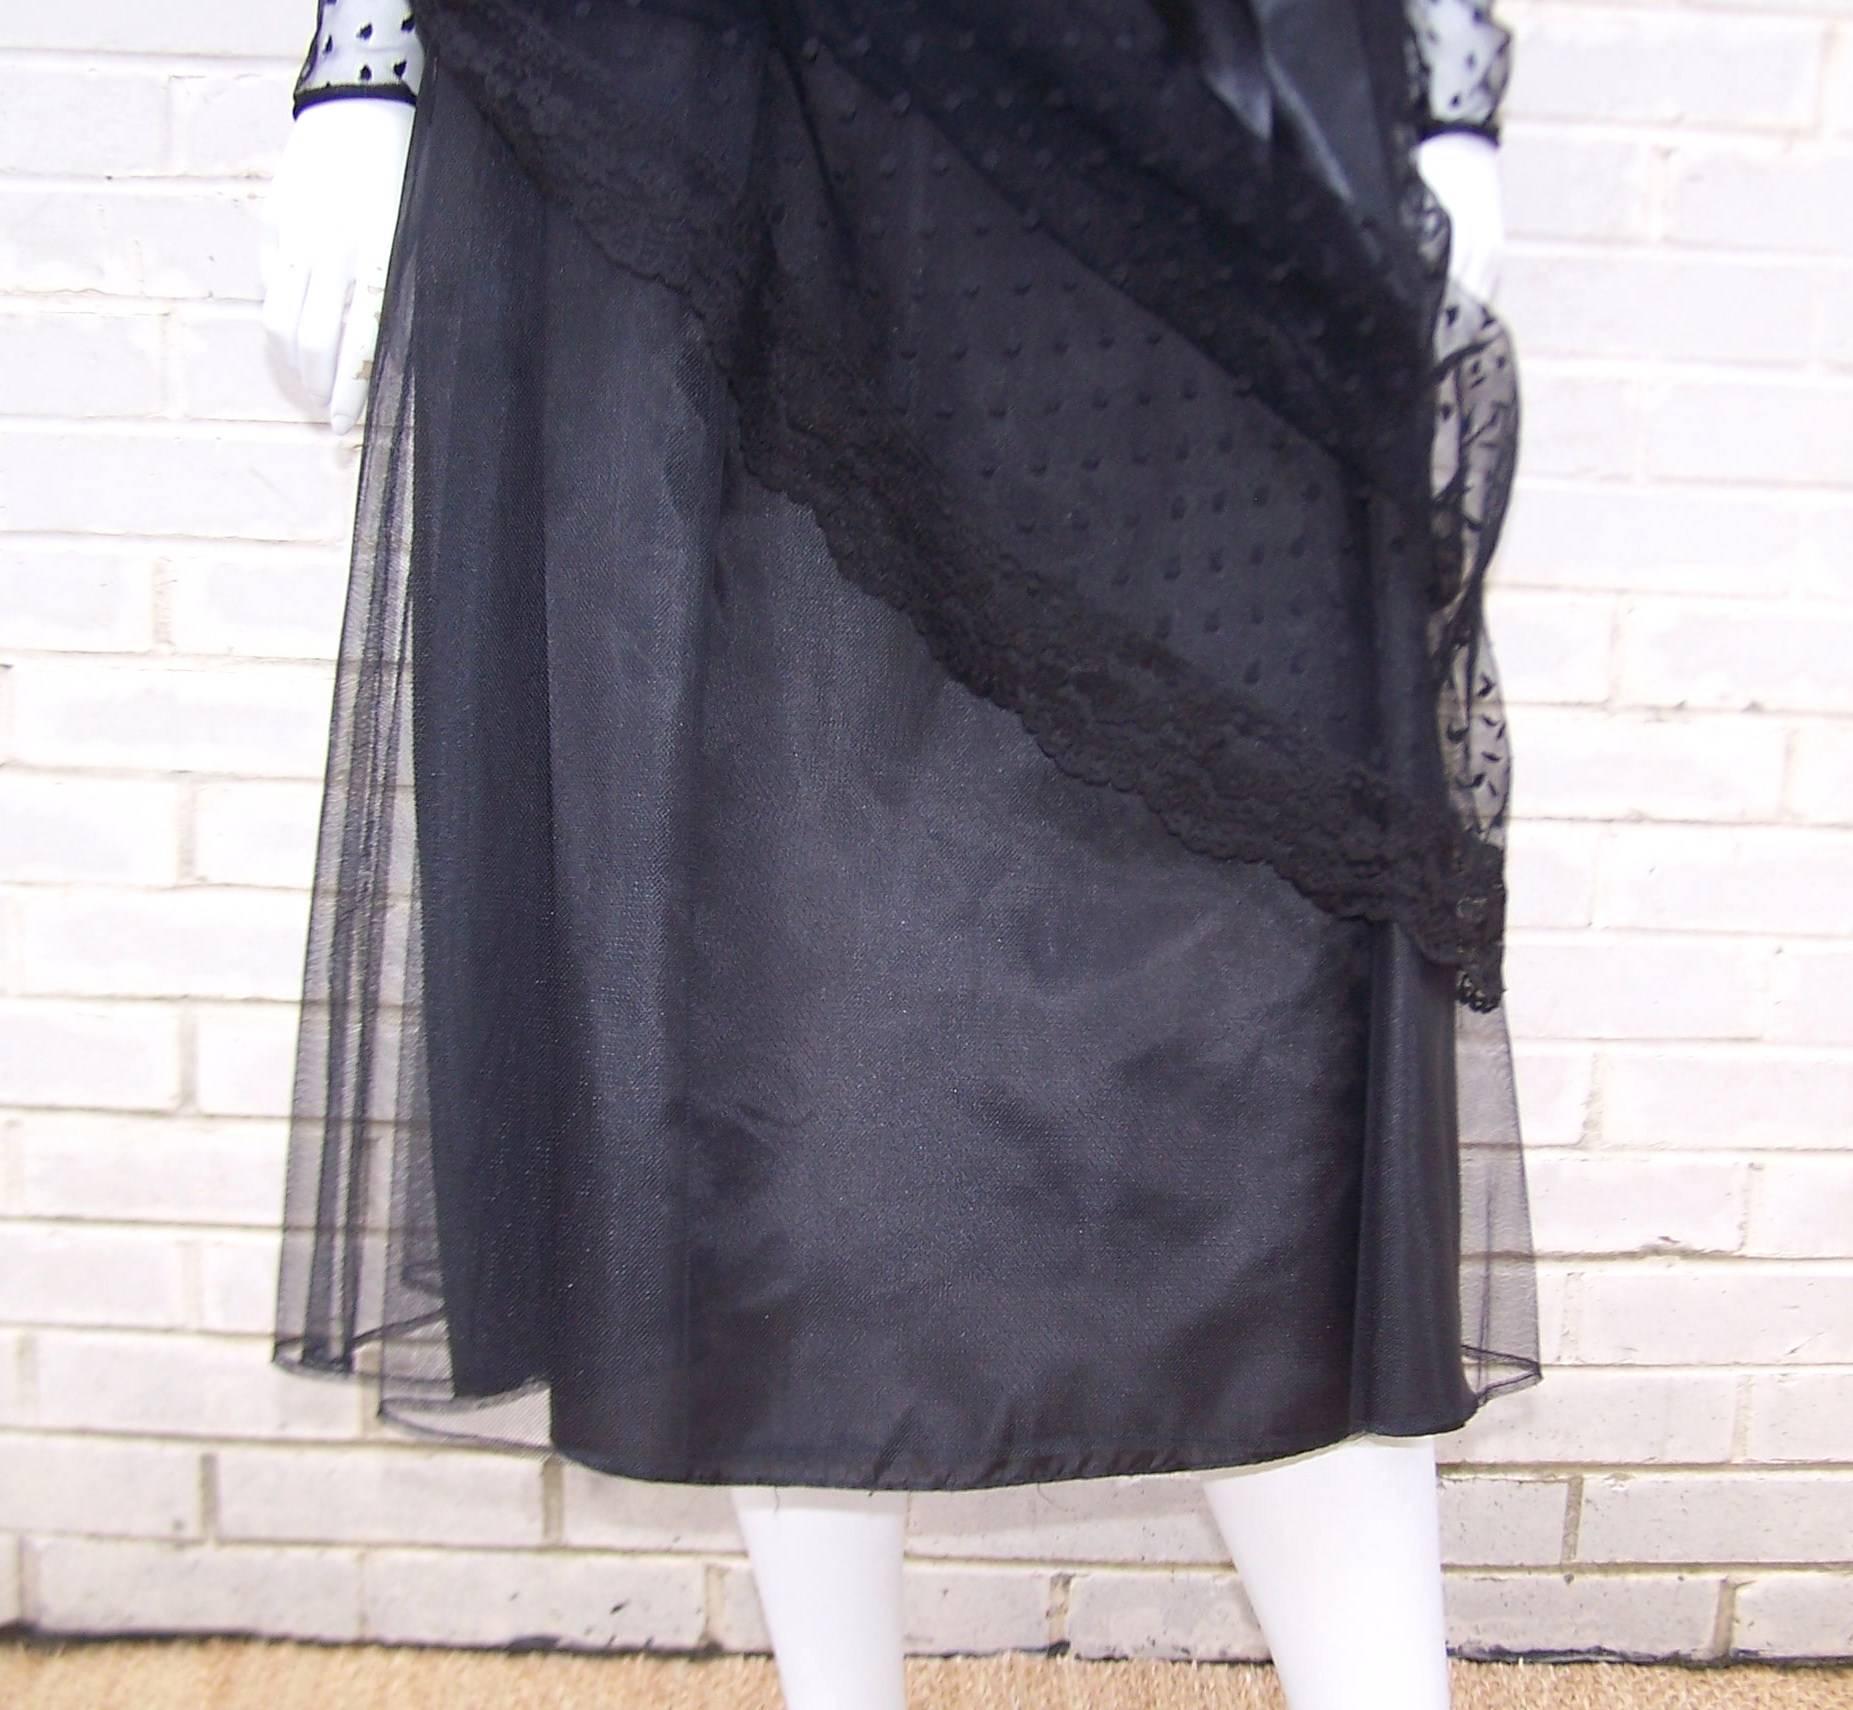 Classy & Classic C.1980 Victor Costa Black Lace Nude Illusion Dress 4